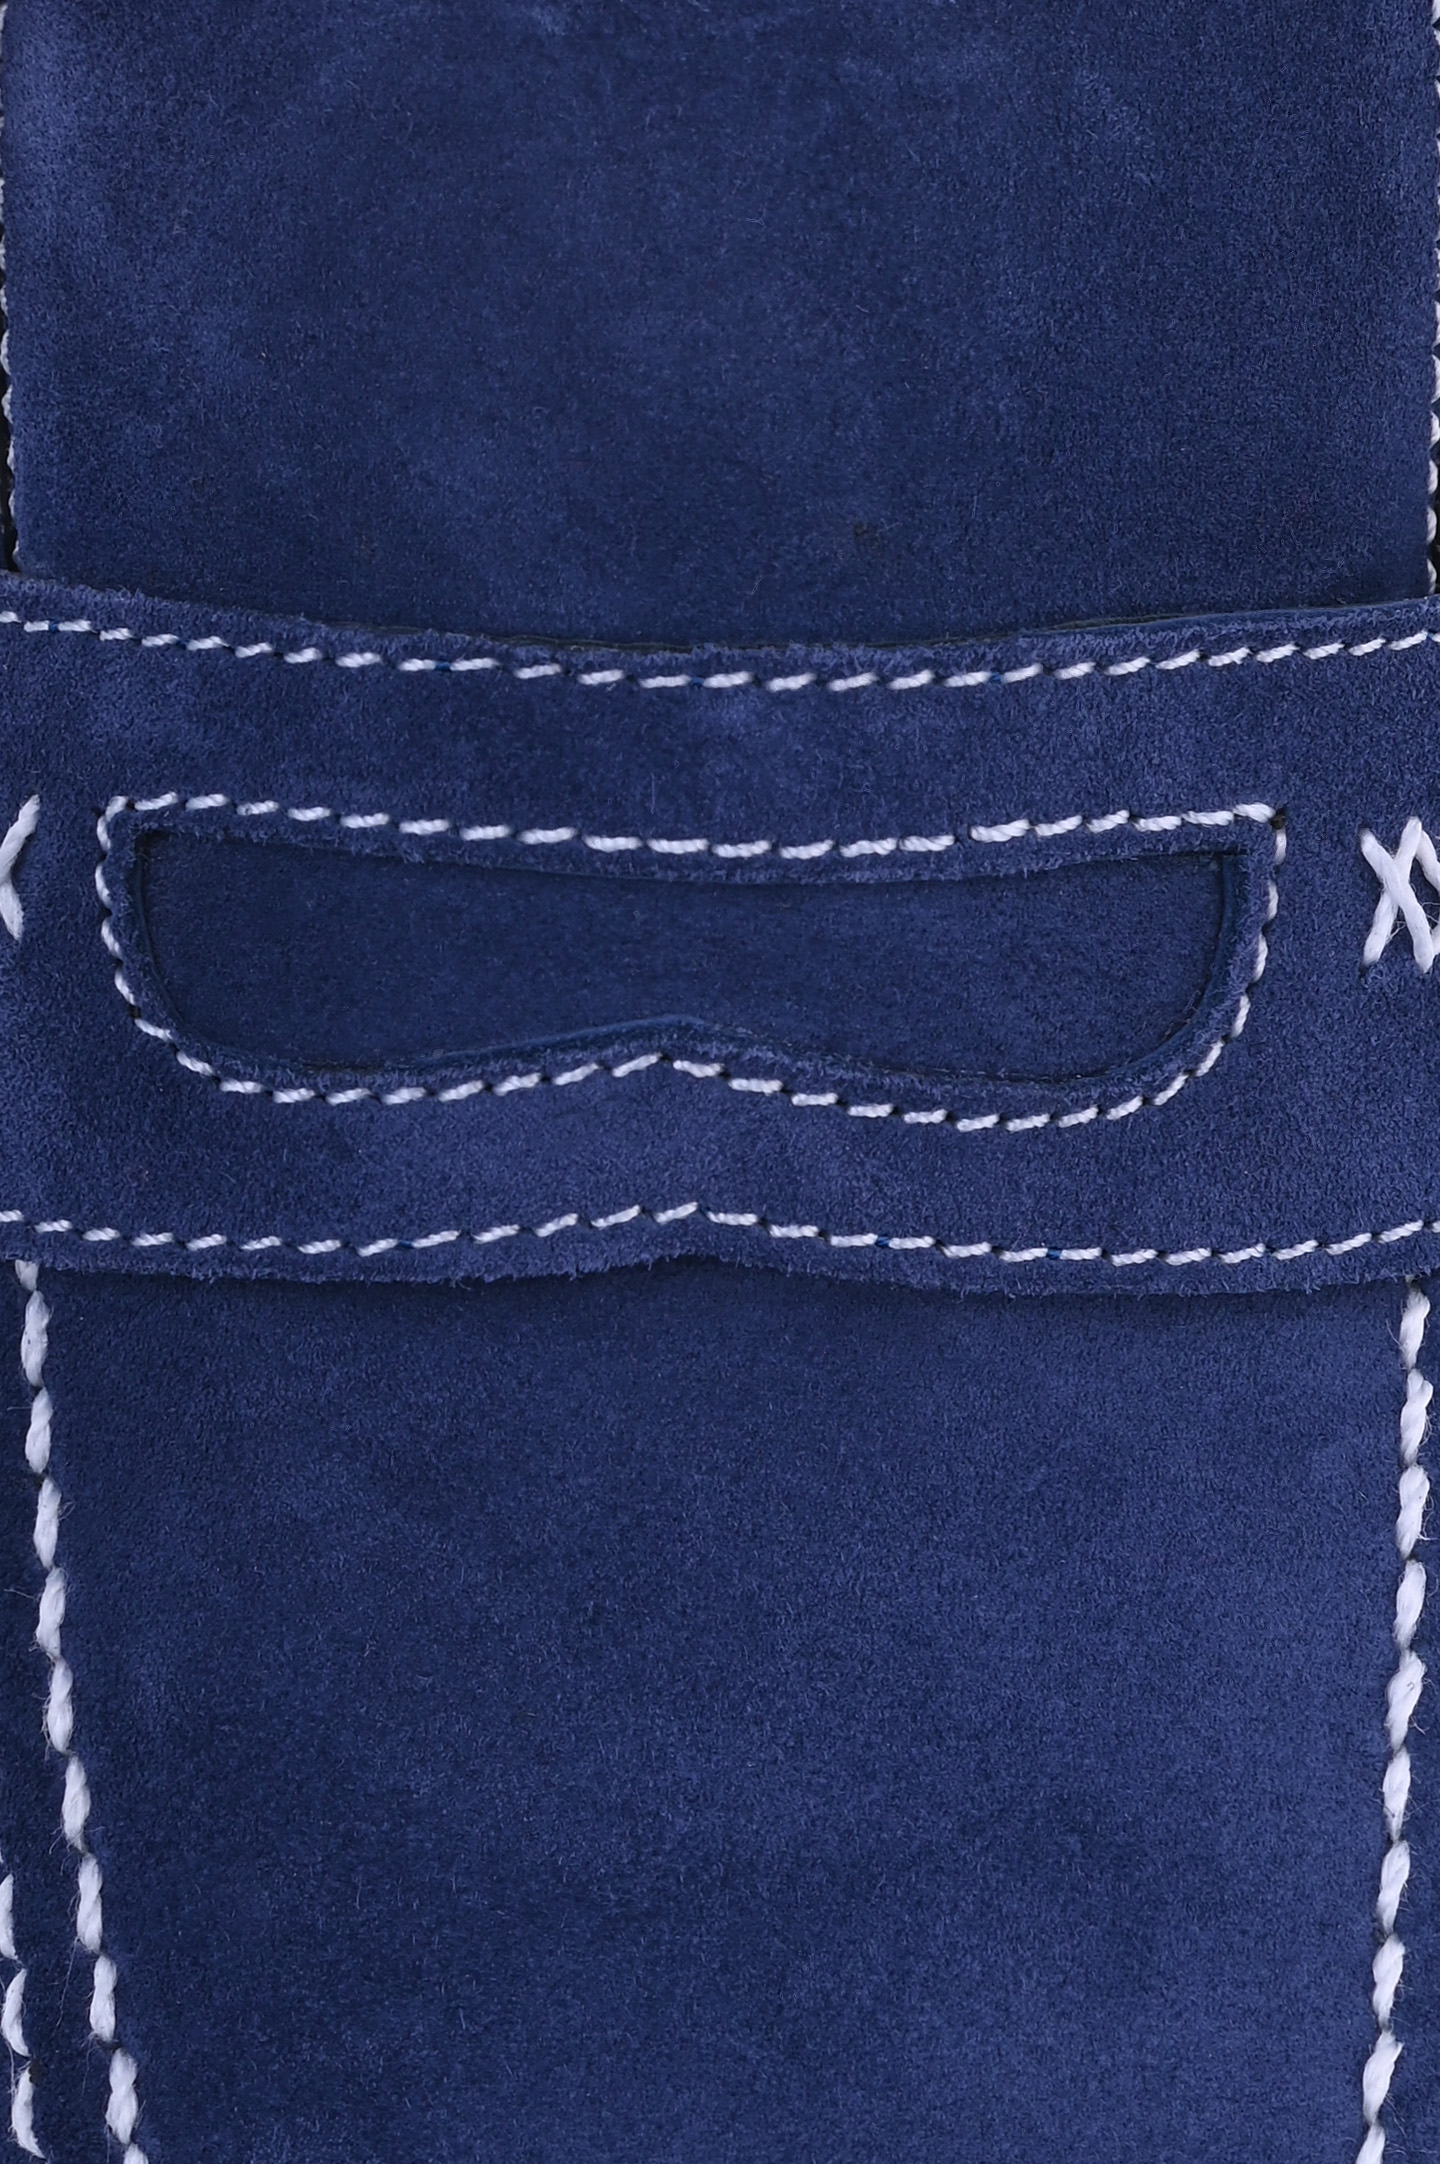 Туфли ARTIOLI 0R308, цвет: Синий, Мужской